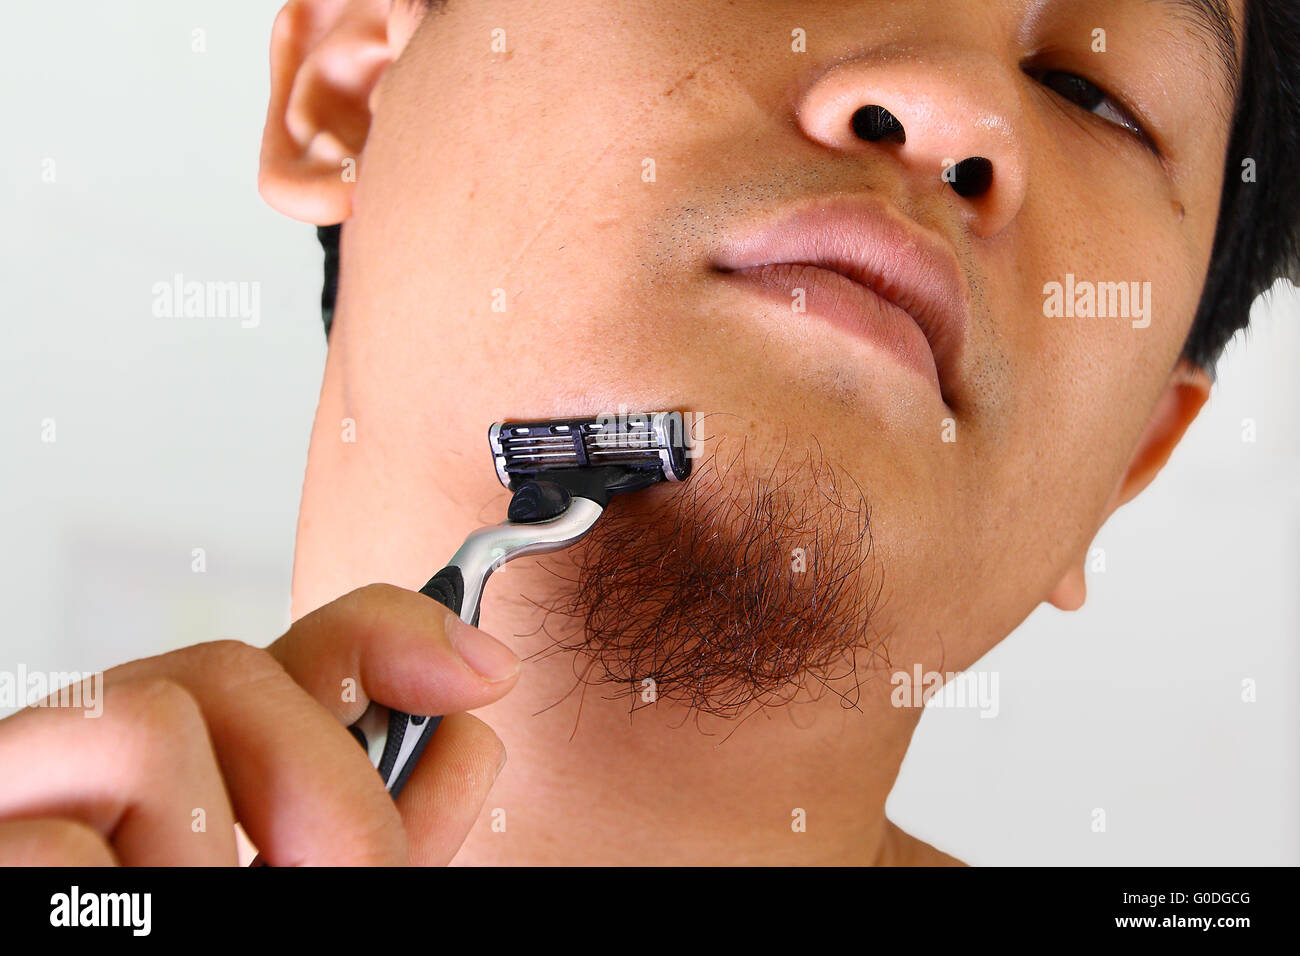 Junge asiatische Mann rasiert seine Haare im Gesicht ohne Sahne  Stockfotografie - Alamy